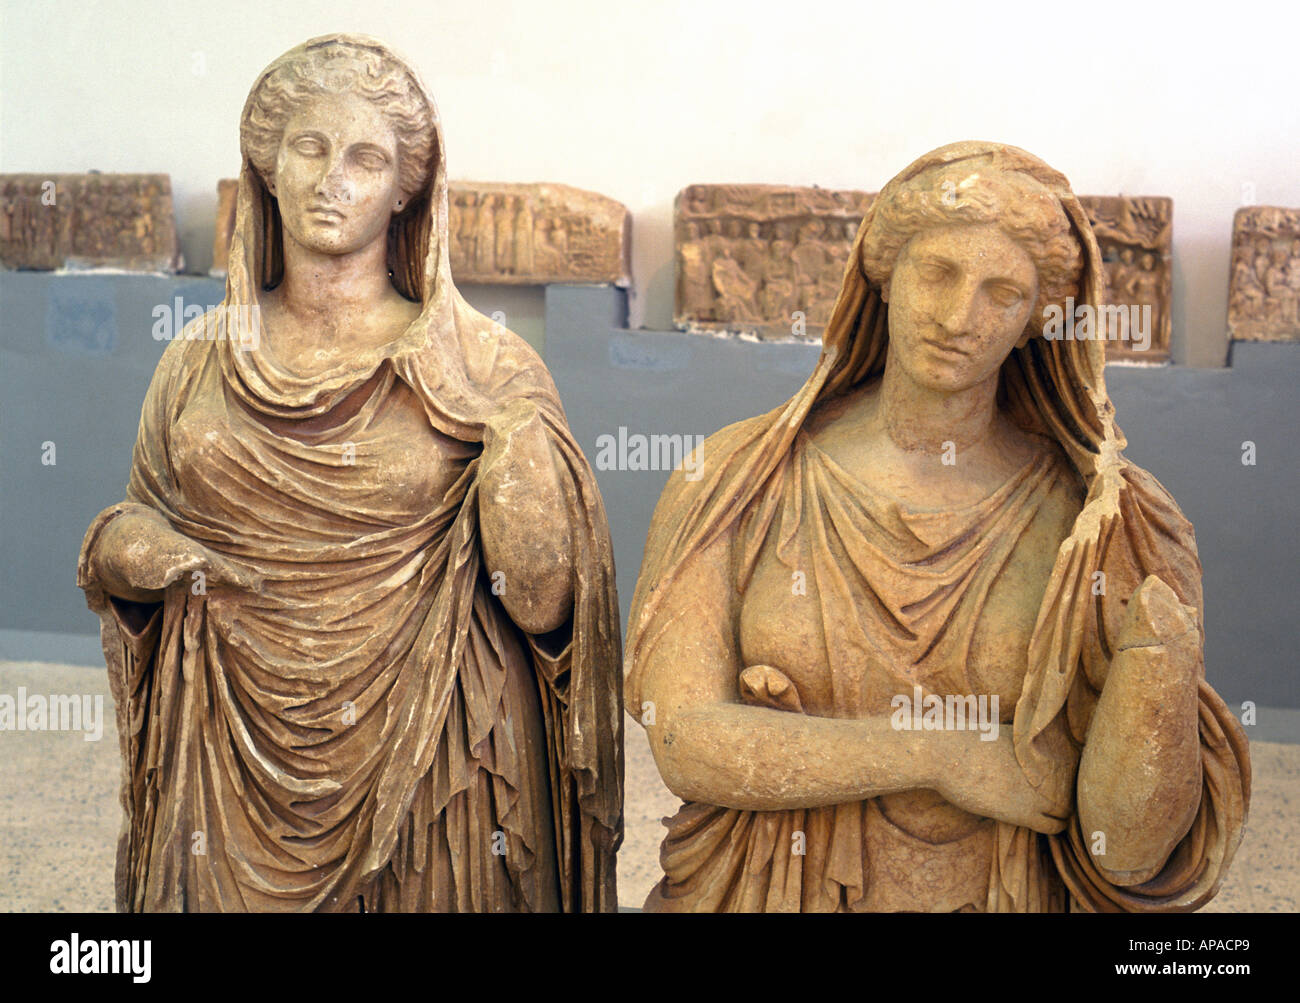 Deux femelles, sculpture romaine, Cyrène, en Libye Banque D'Images